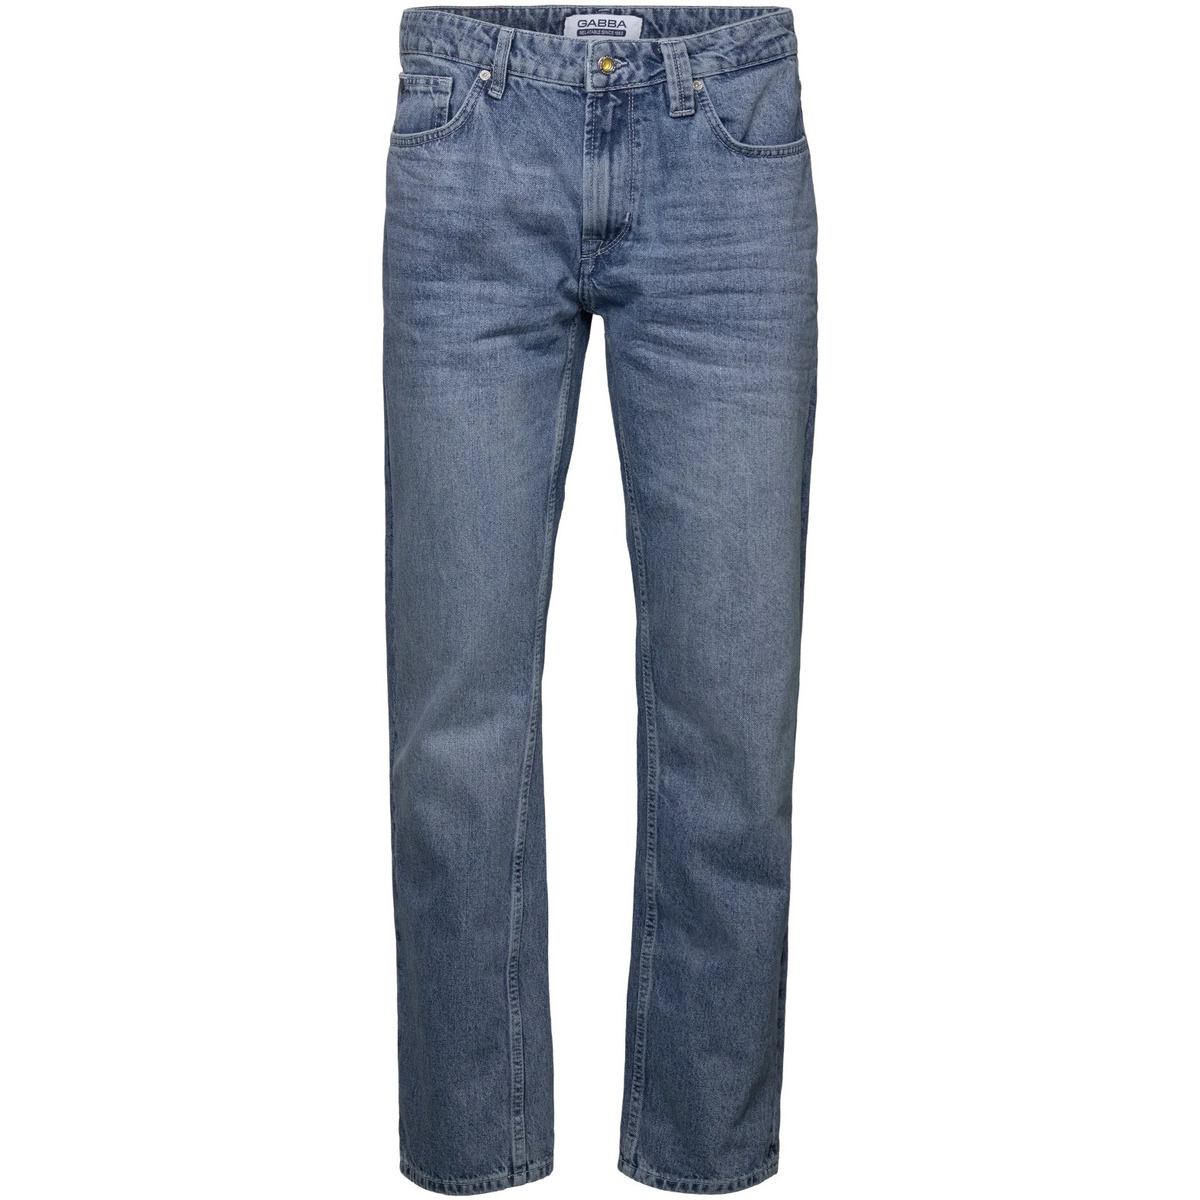 Textiel Dames Broeken / Pantalons Gabba Math K4517 Jeans 5002 Mid Blue Denim  10441 Blauw